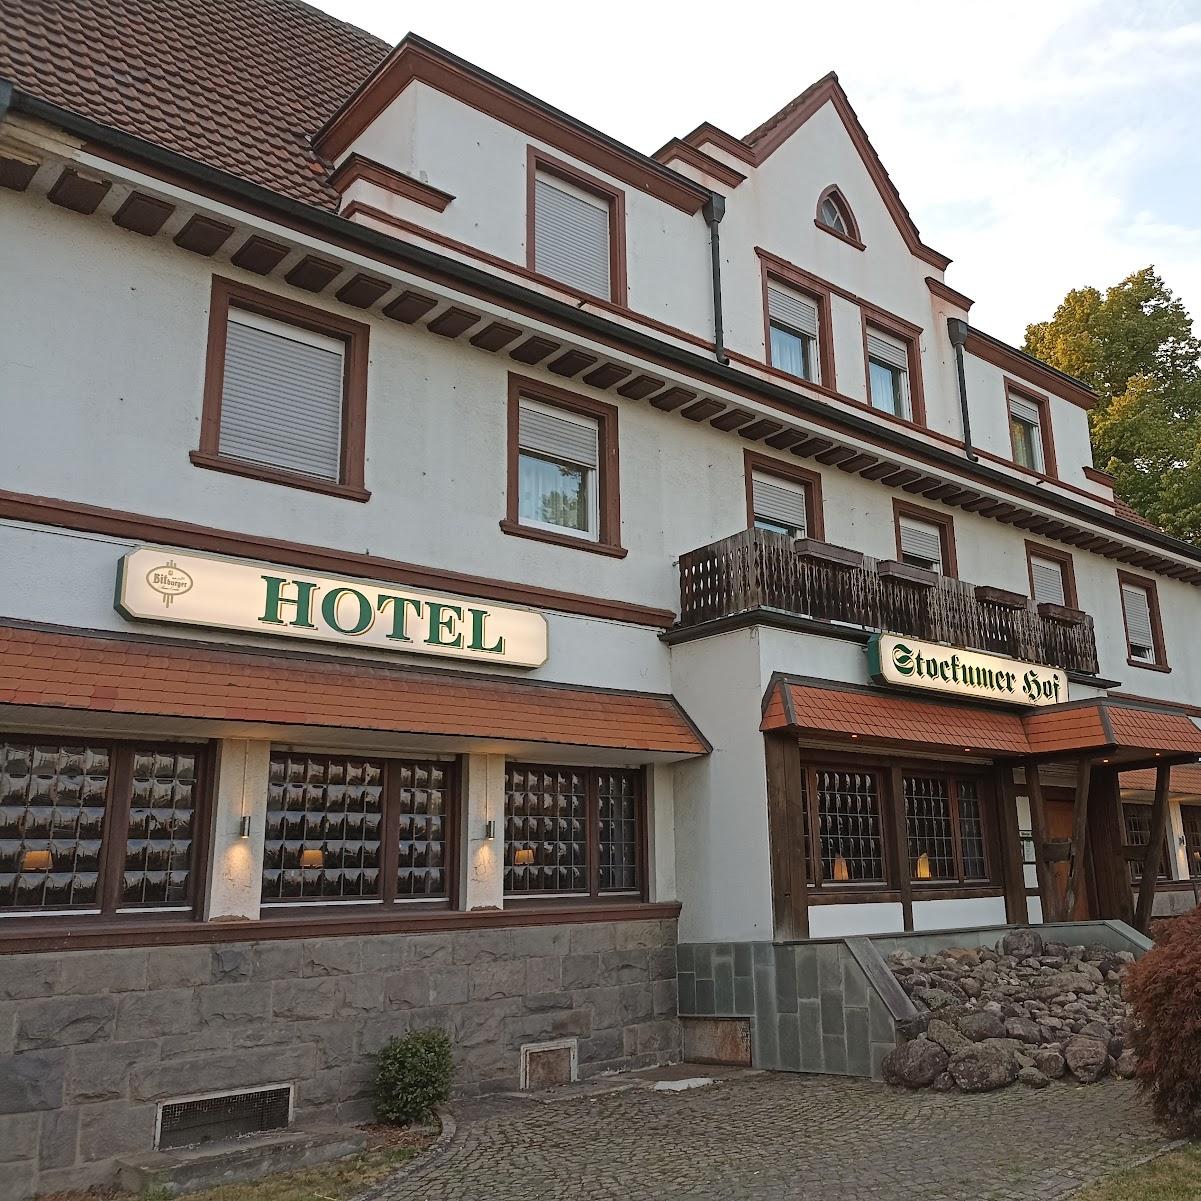 Restaurant "Hotel Stockumer Hof" in Werne